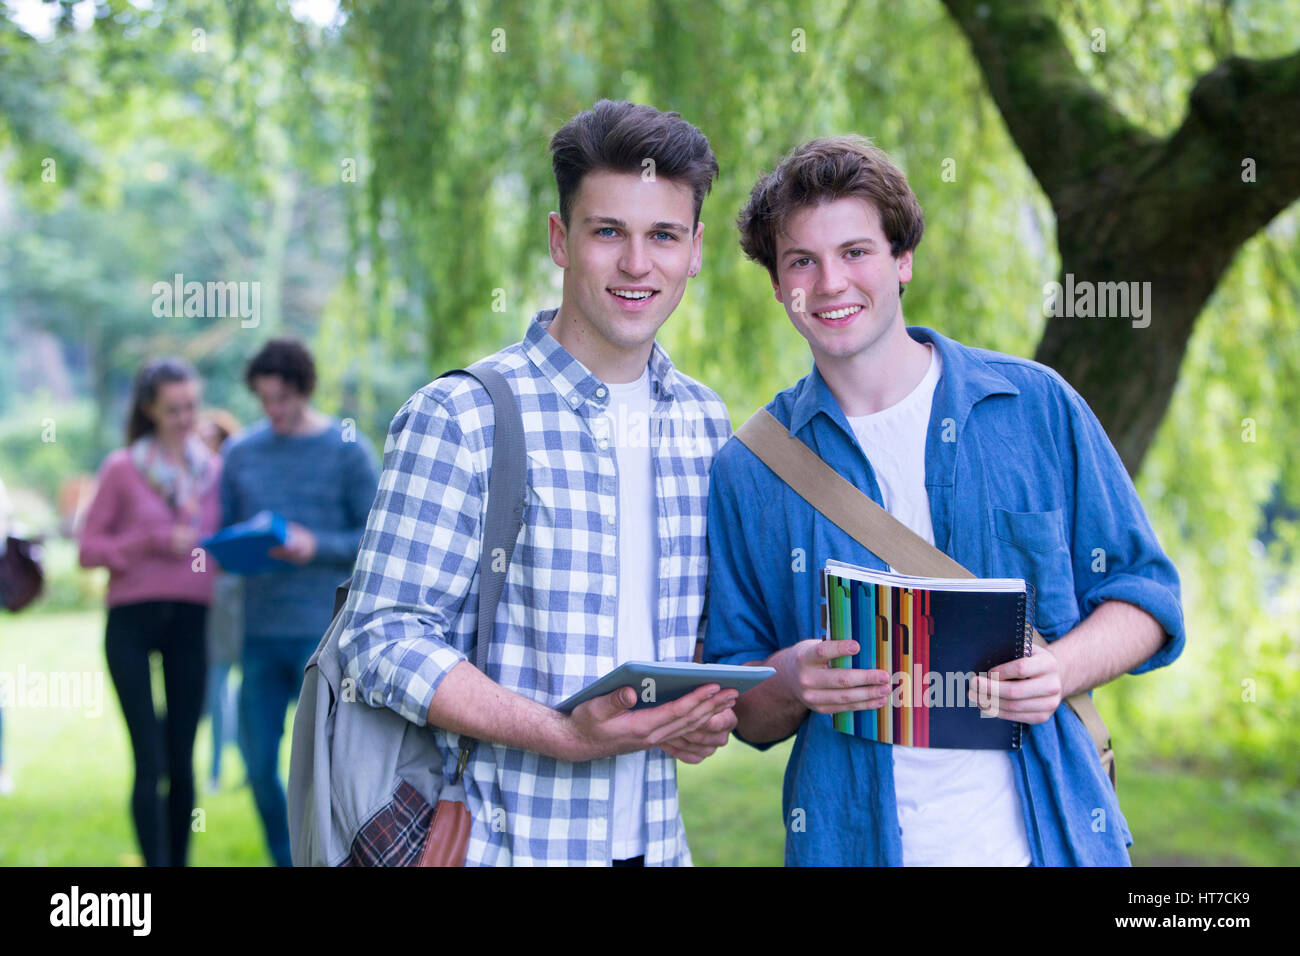 Due felici gli studenti maschi sorriso come rilassarsi all'aperto e di studio. Essi detengono le loro borse, libri e una tavoletta digitale come si guarda la fotocamera. Foto Stock